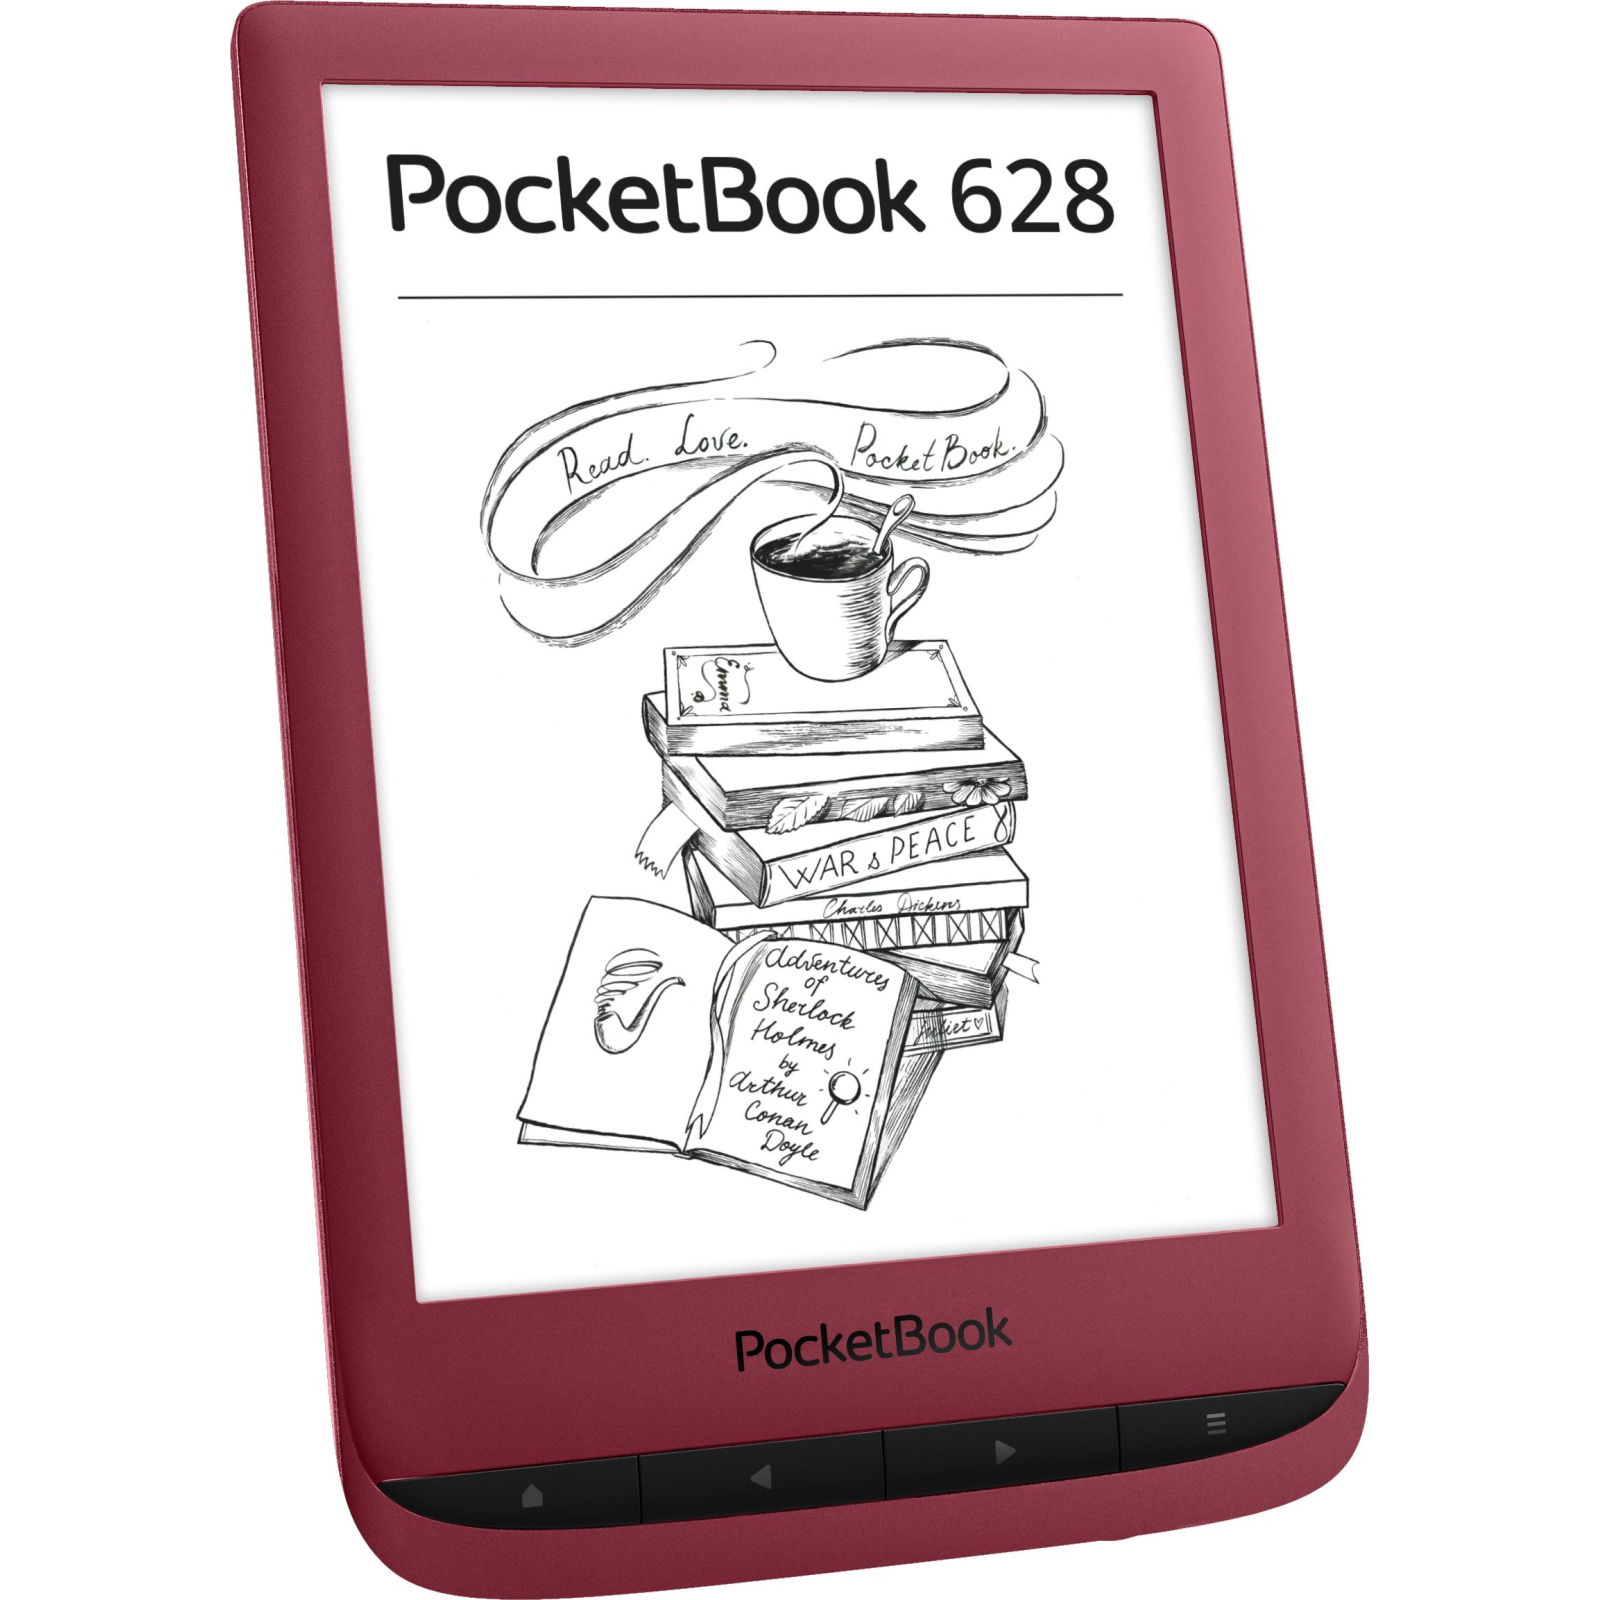 Электронная книга Pocketbook 628 Touch Lux5 Ink Black (PB628-P-CIS) изображение 3